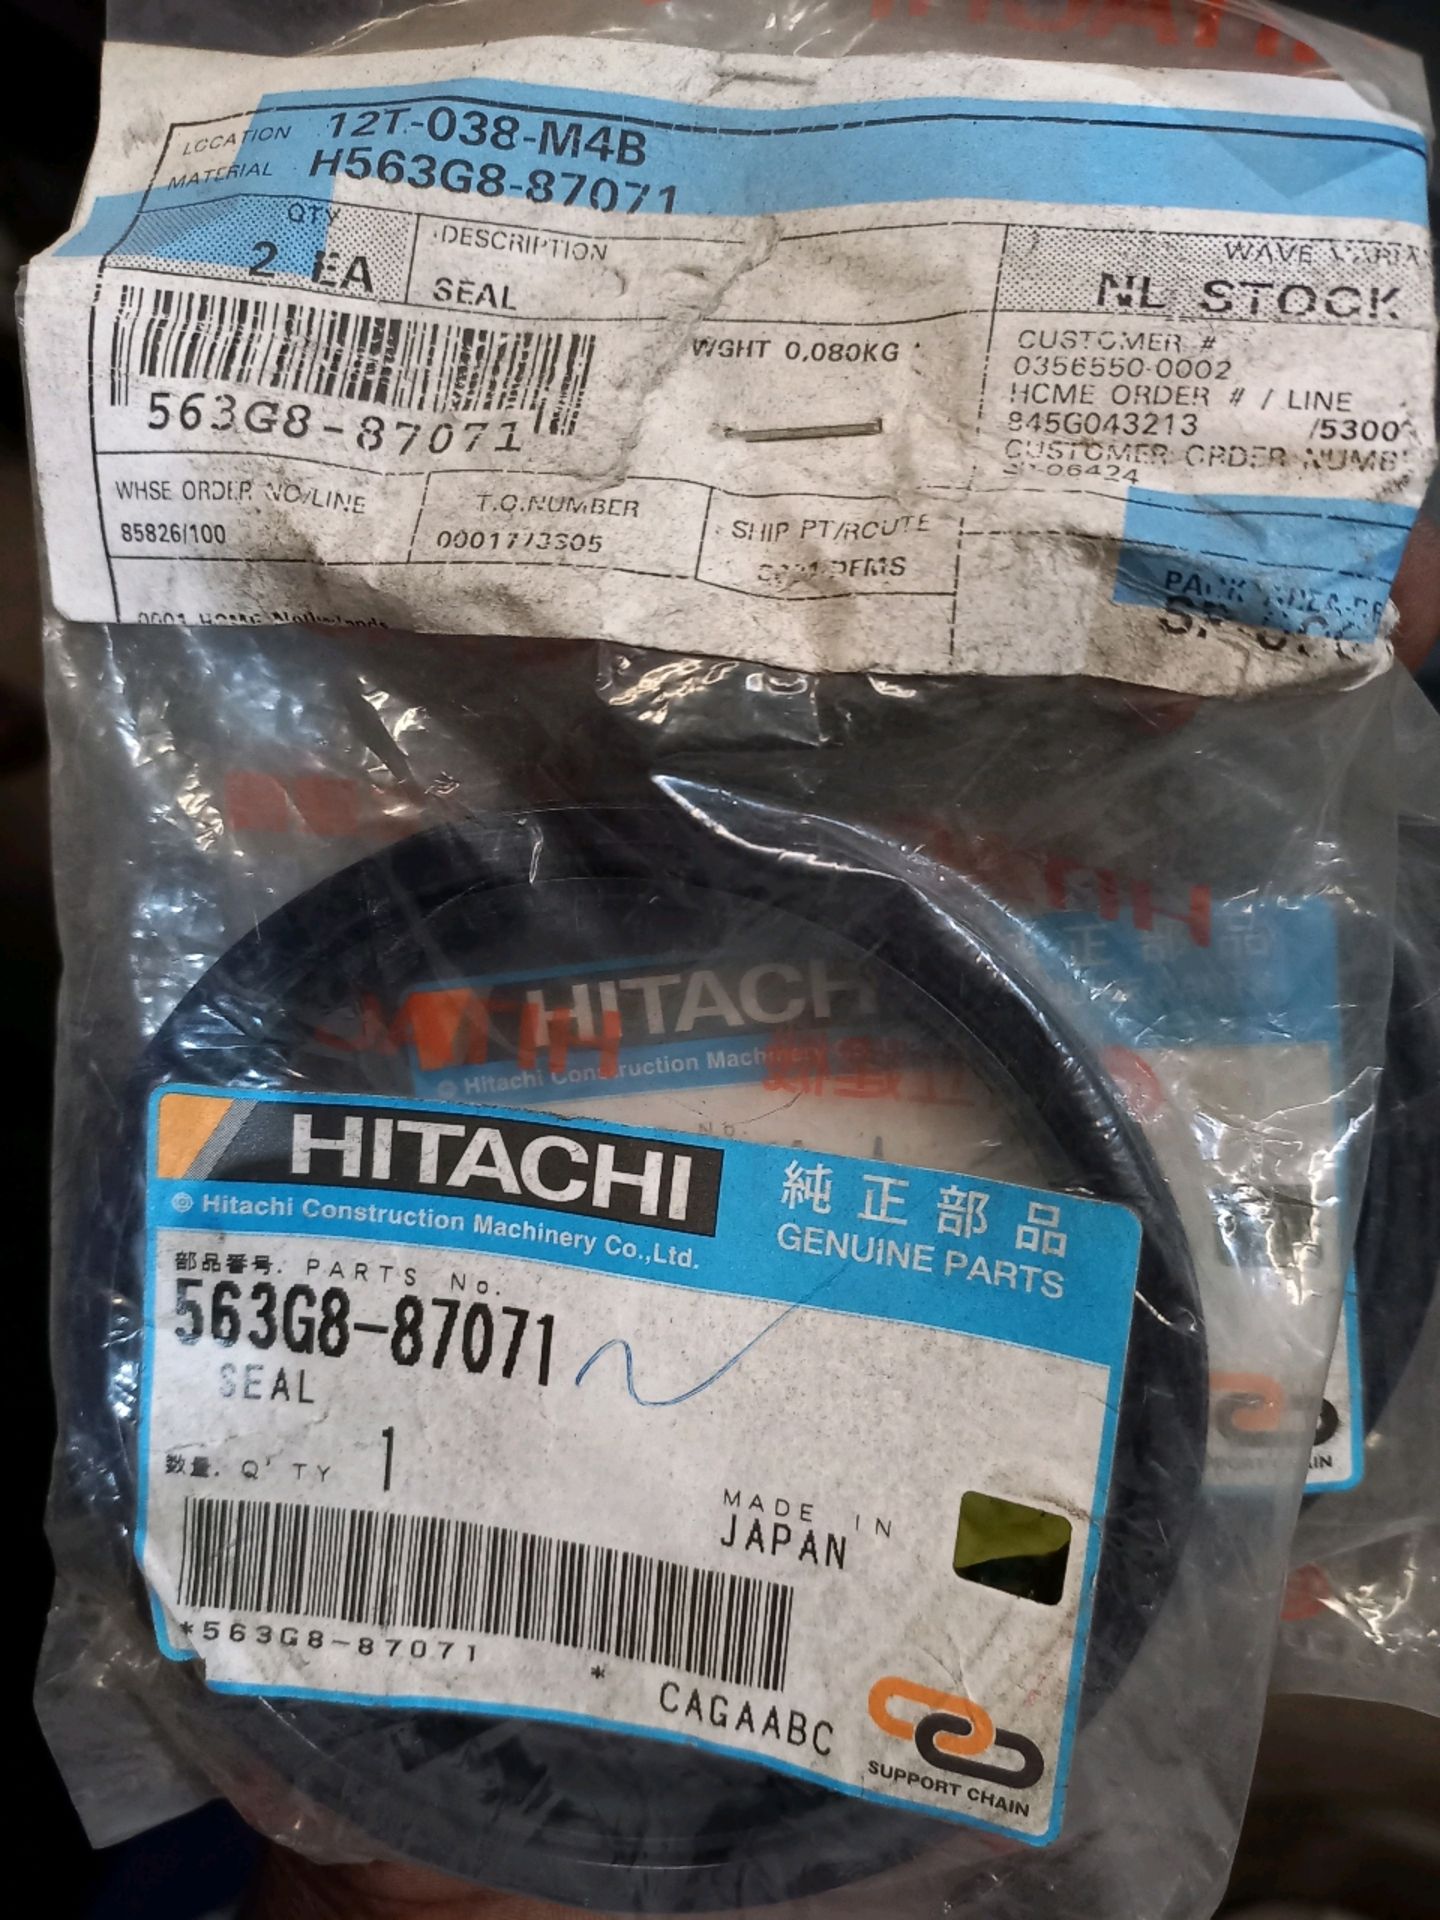 HITACHI MINING ZW310 PARTS - Image 19 of 30